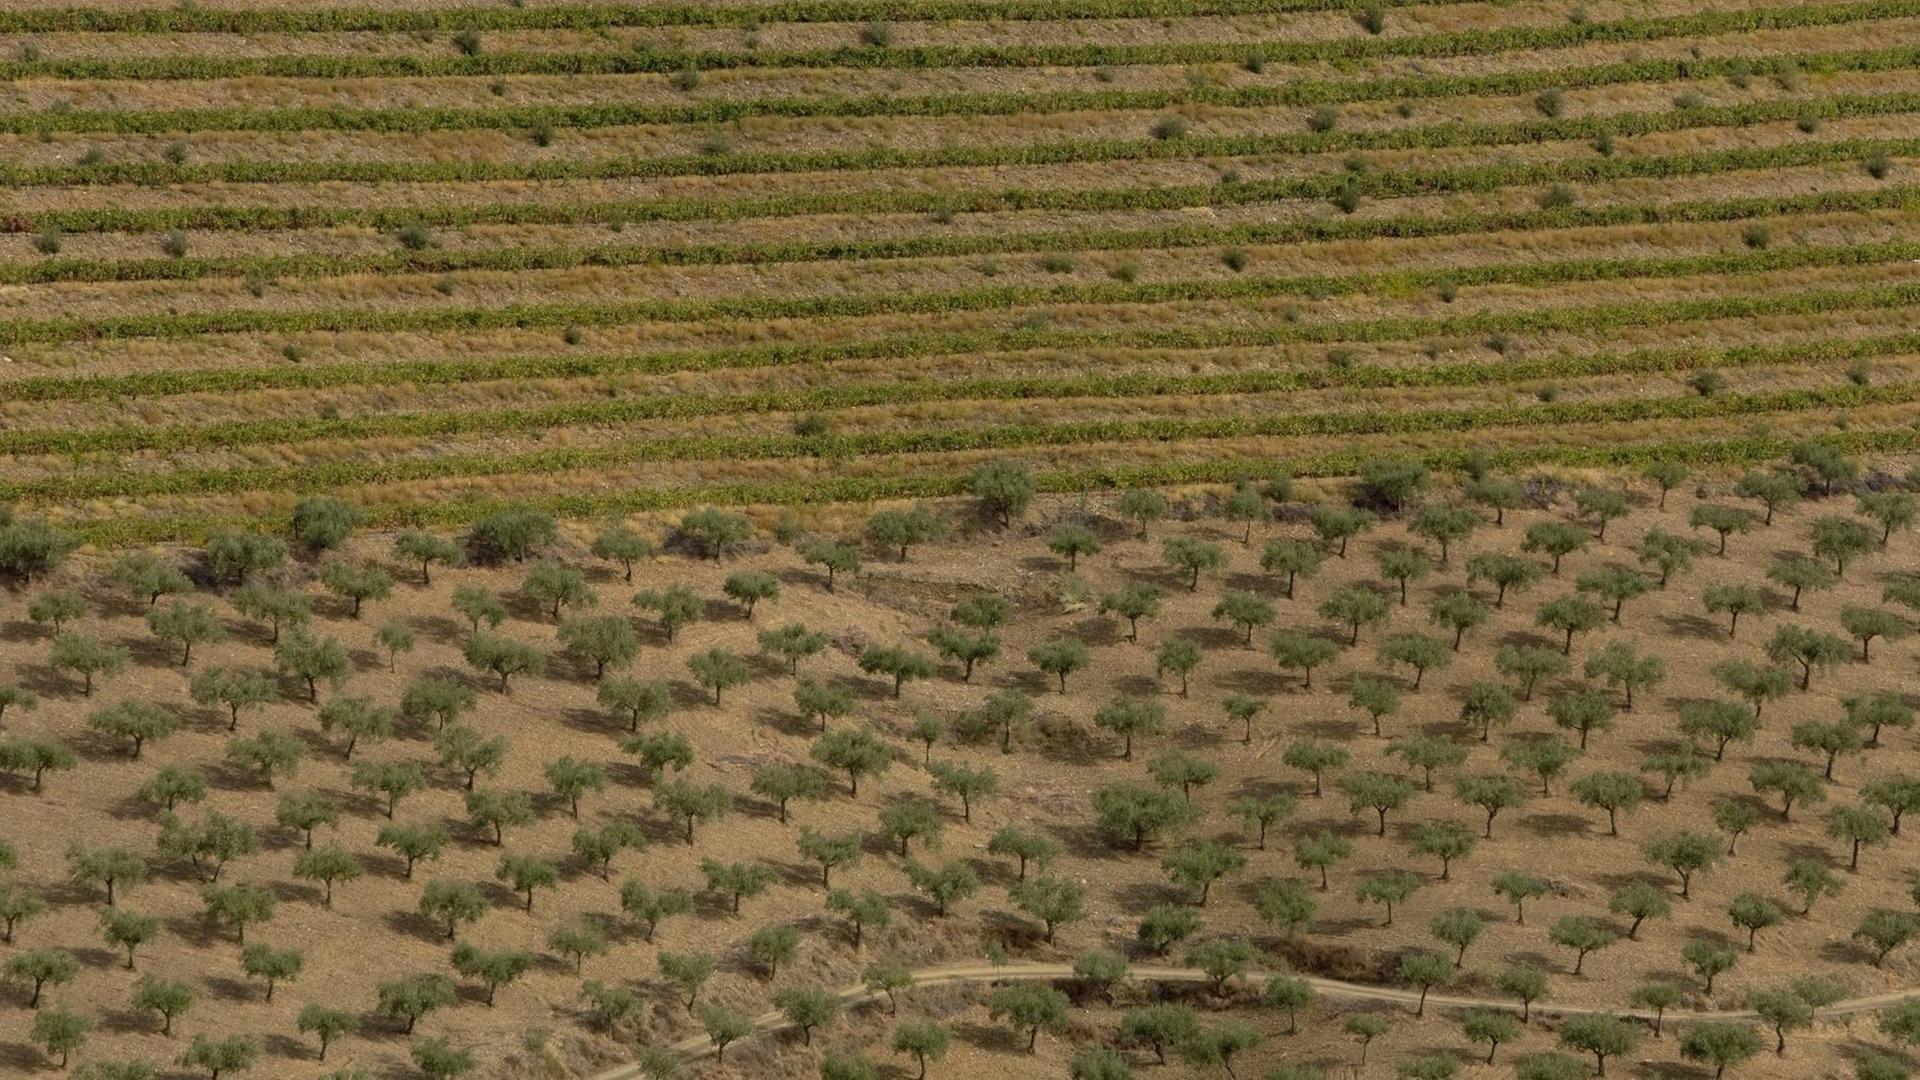 Weinberge und Olivenplantage in Portugal